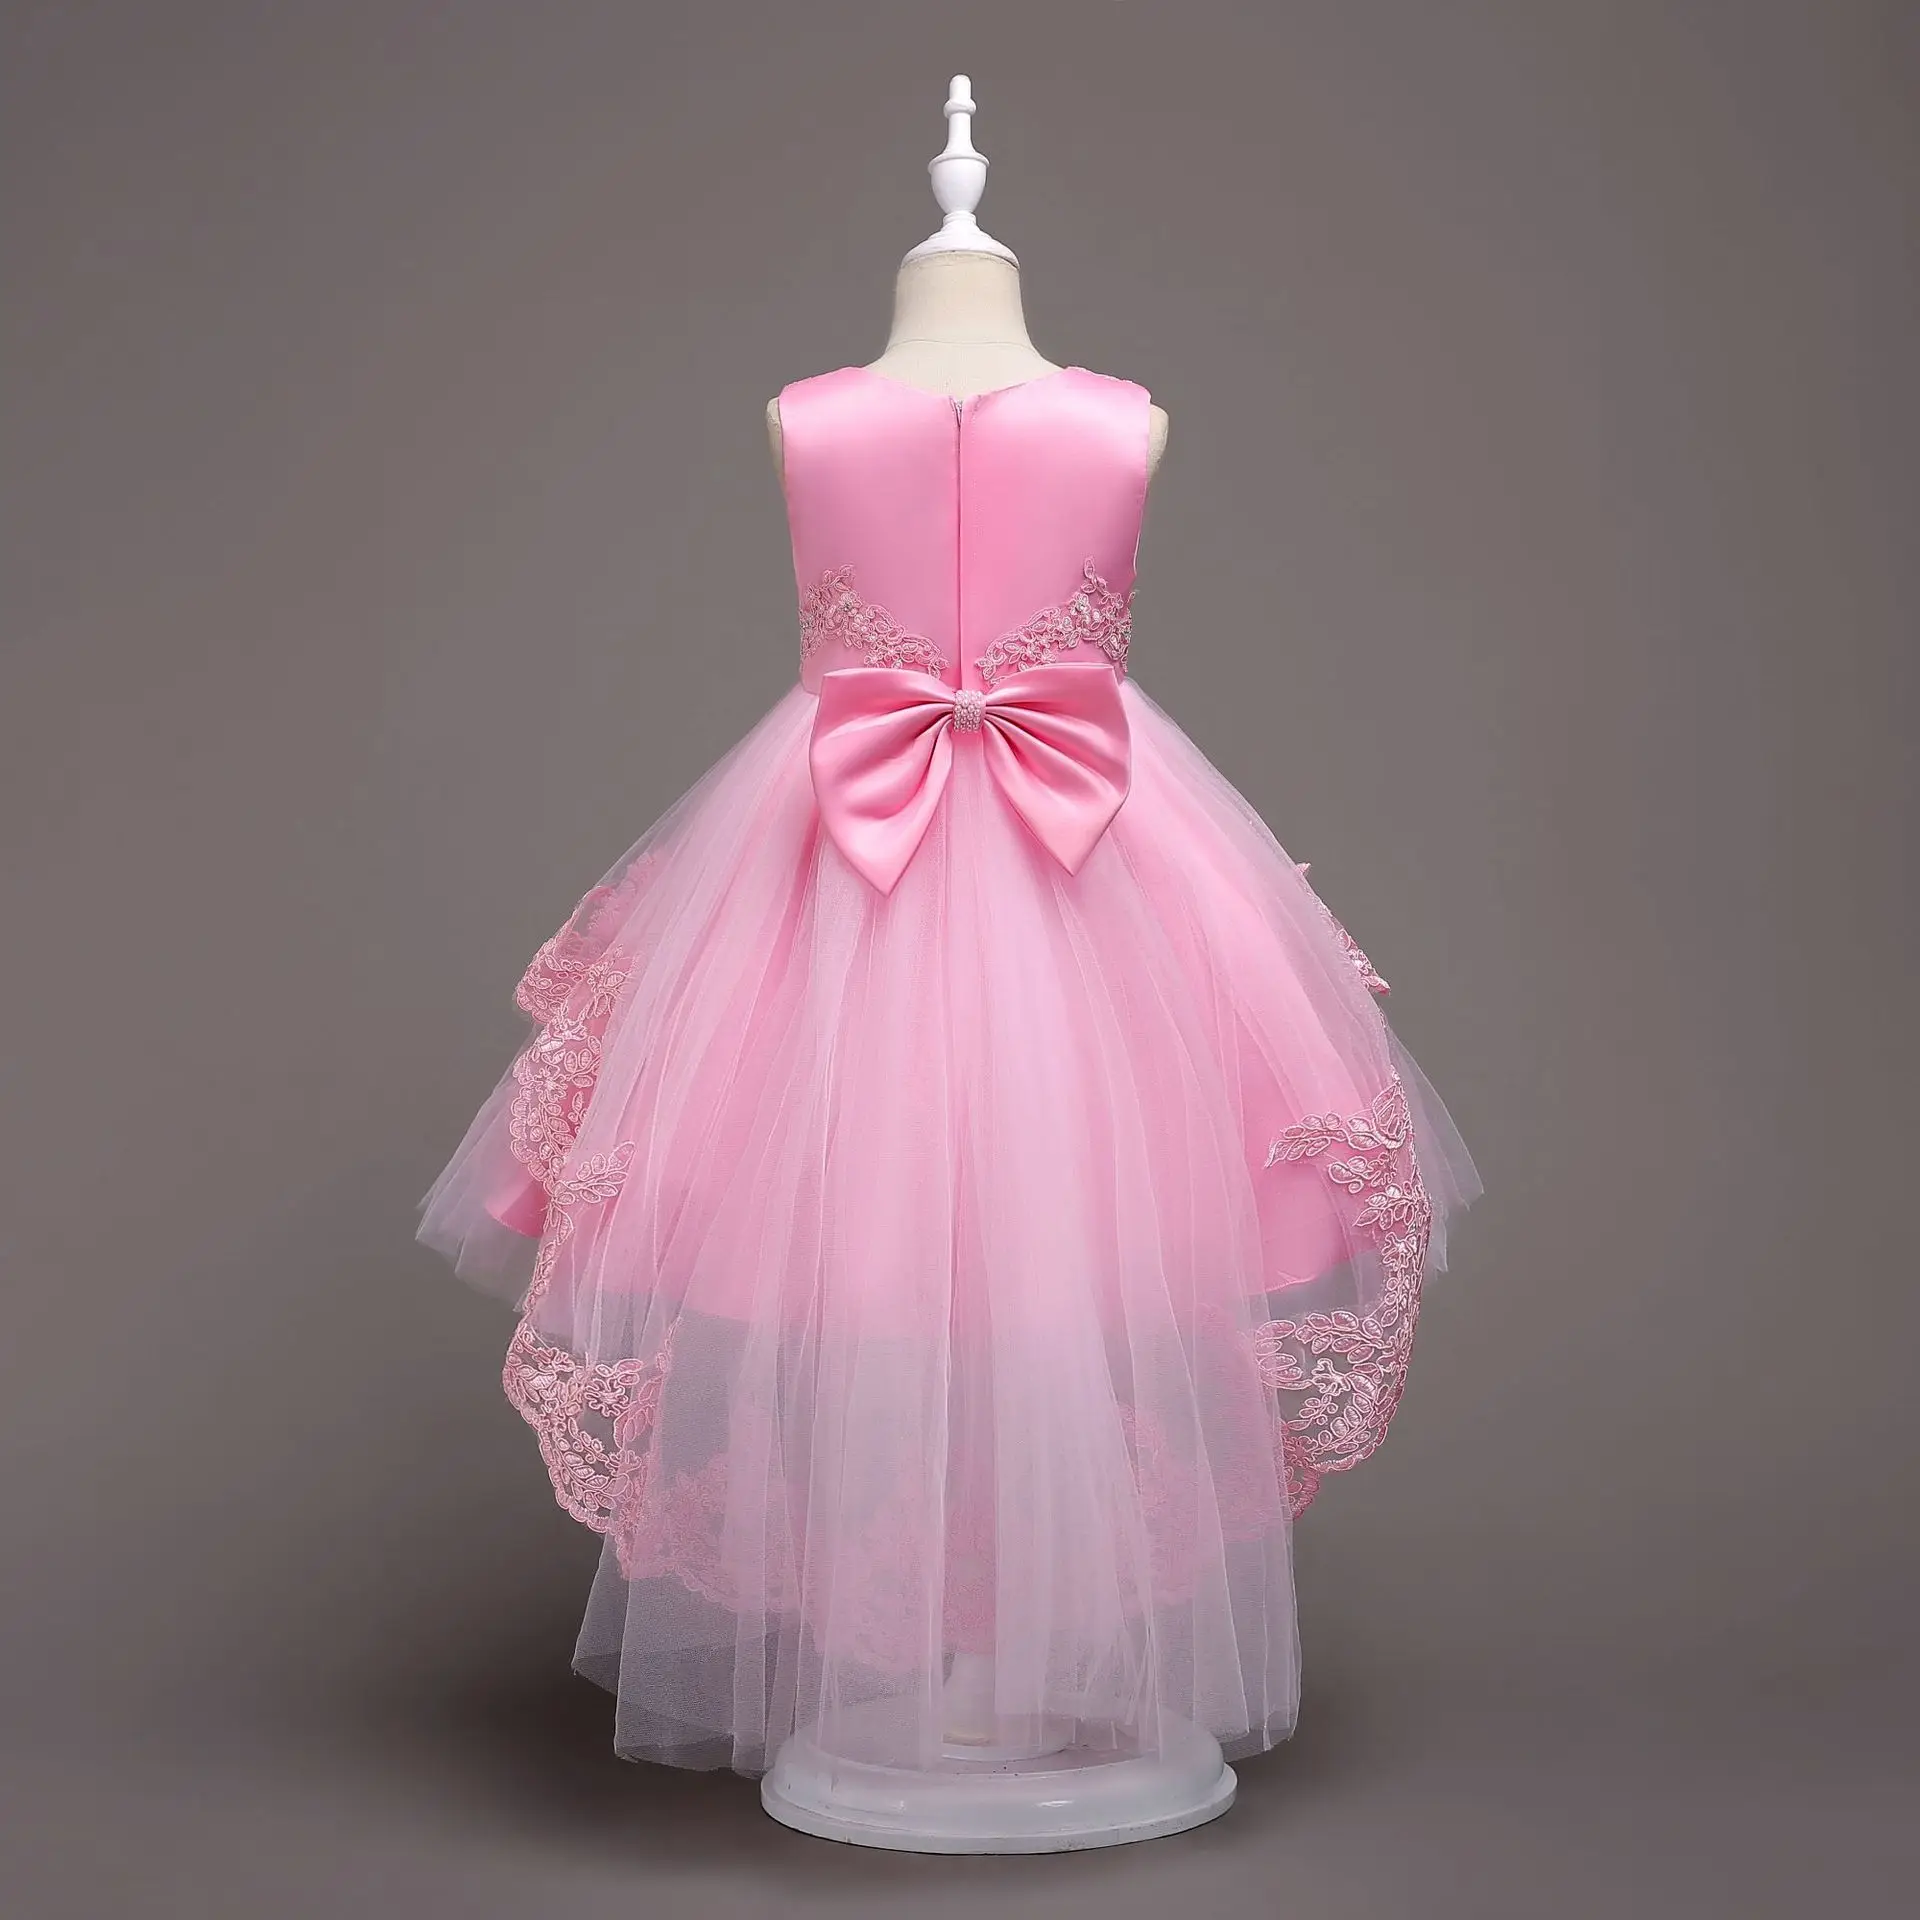 Модное детское коктейльное платье для выпускного вечера детское платье-светильник на свадьбу, вечернее платье для девочек от 3 до 14 лет, Цвета: голубой, фуксия, розовый, красный, белый